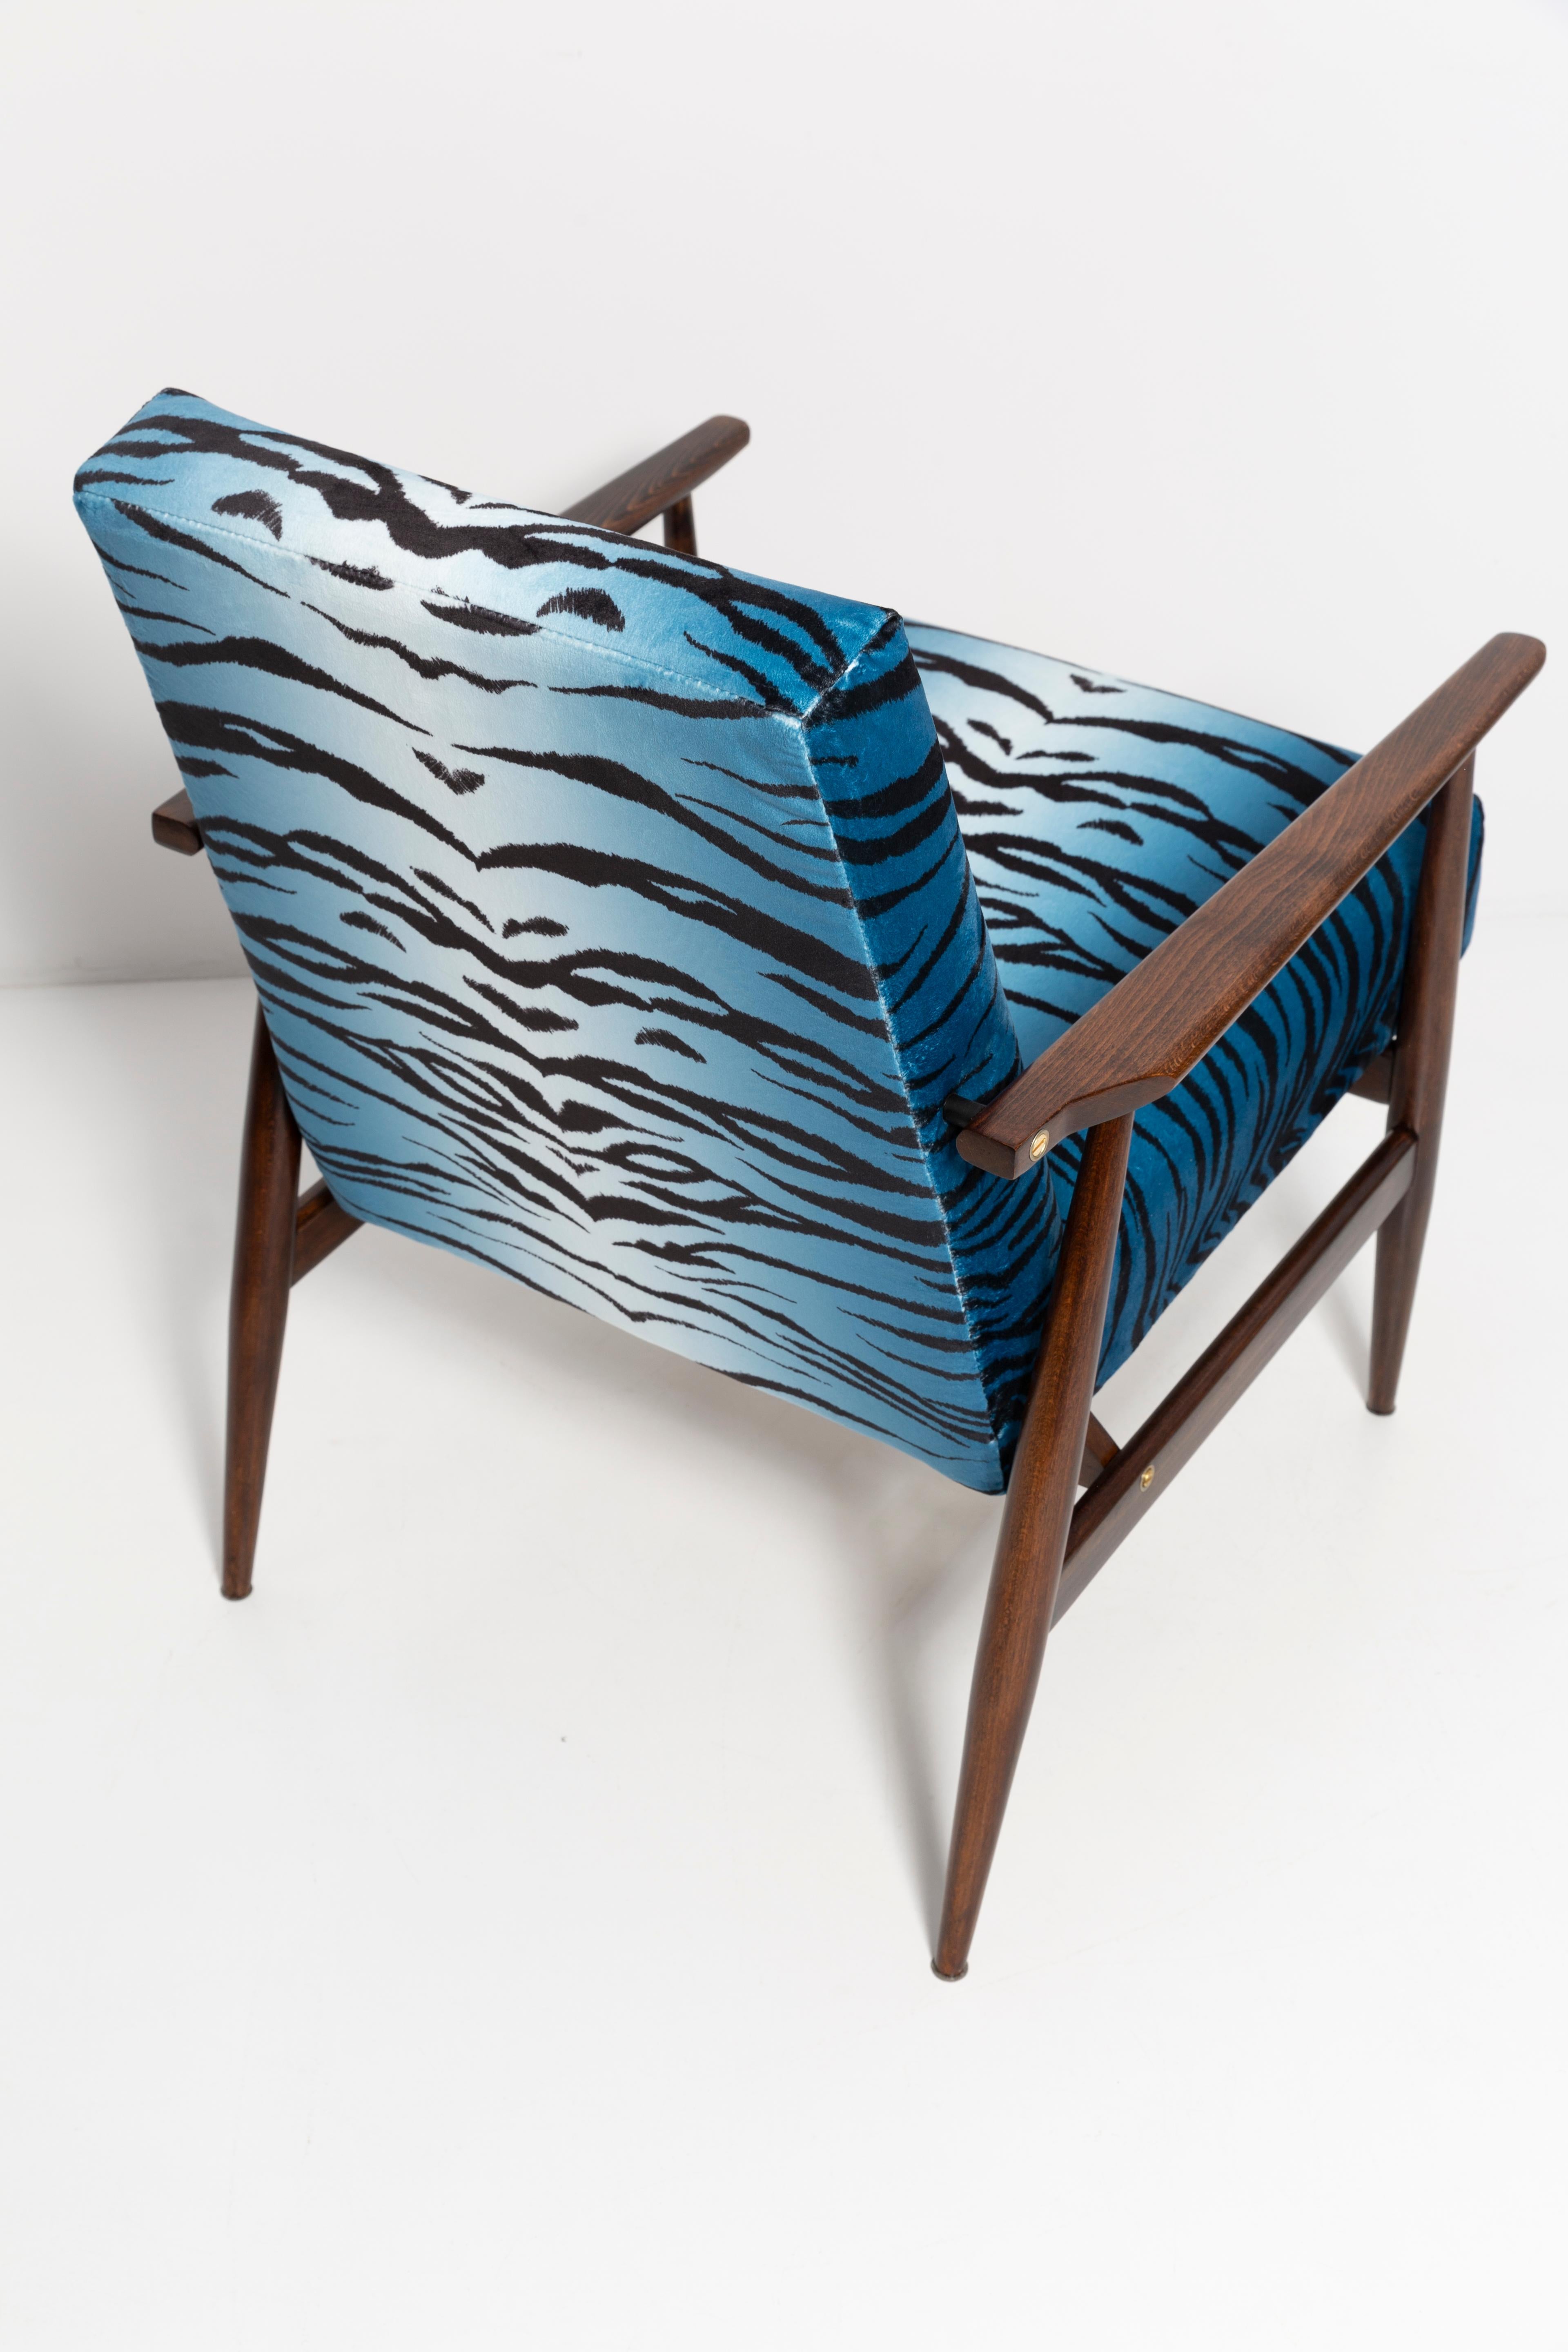 Set of Two Midcentury Blue Zebra Print Velvet Dante Armchairs, H. Lis, 1960s For Sale 1